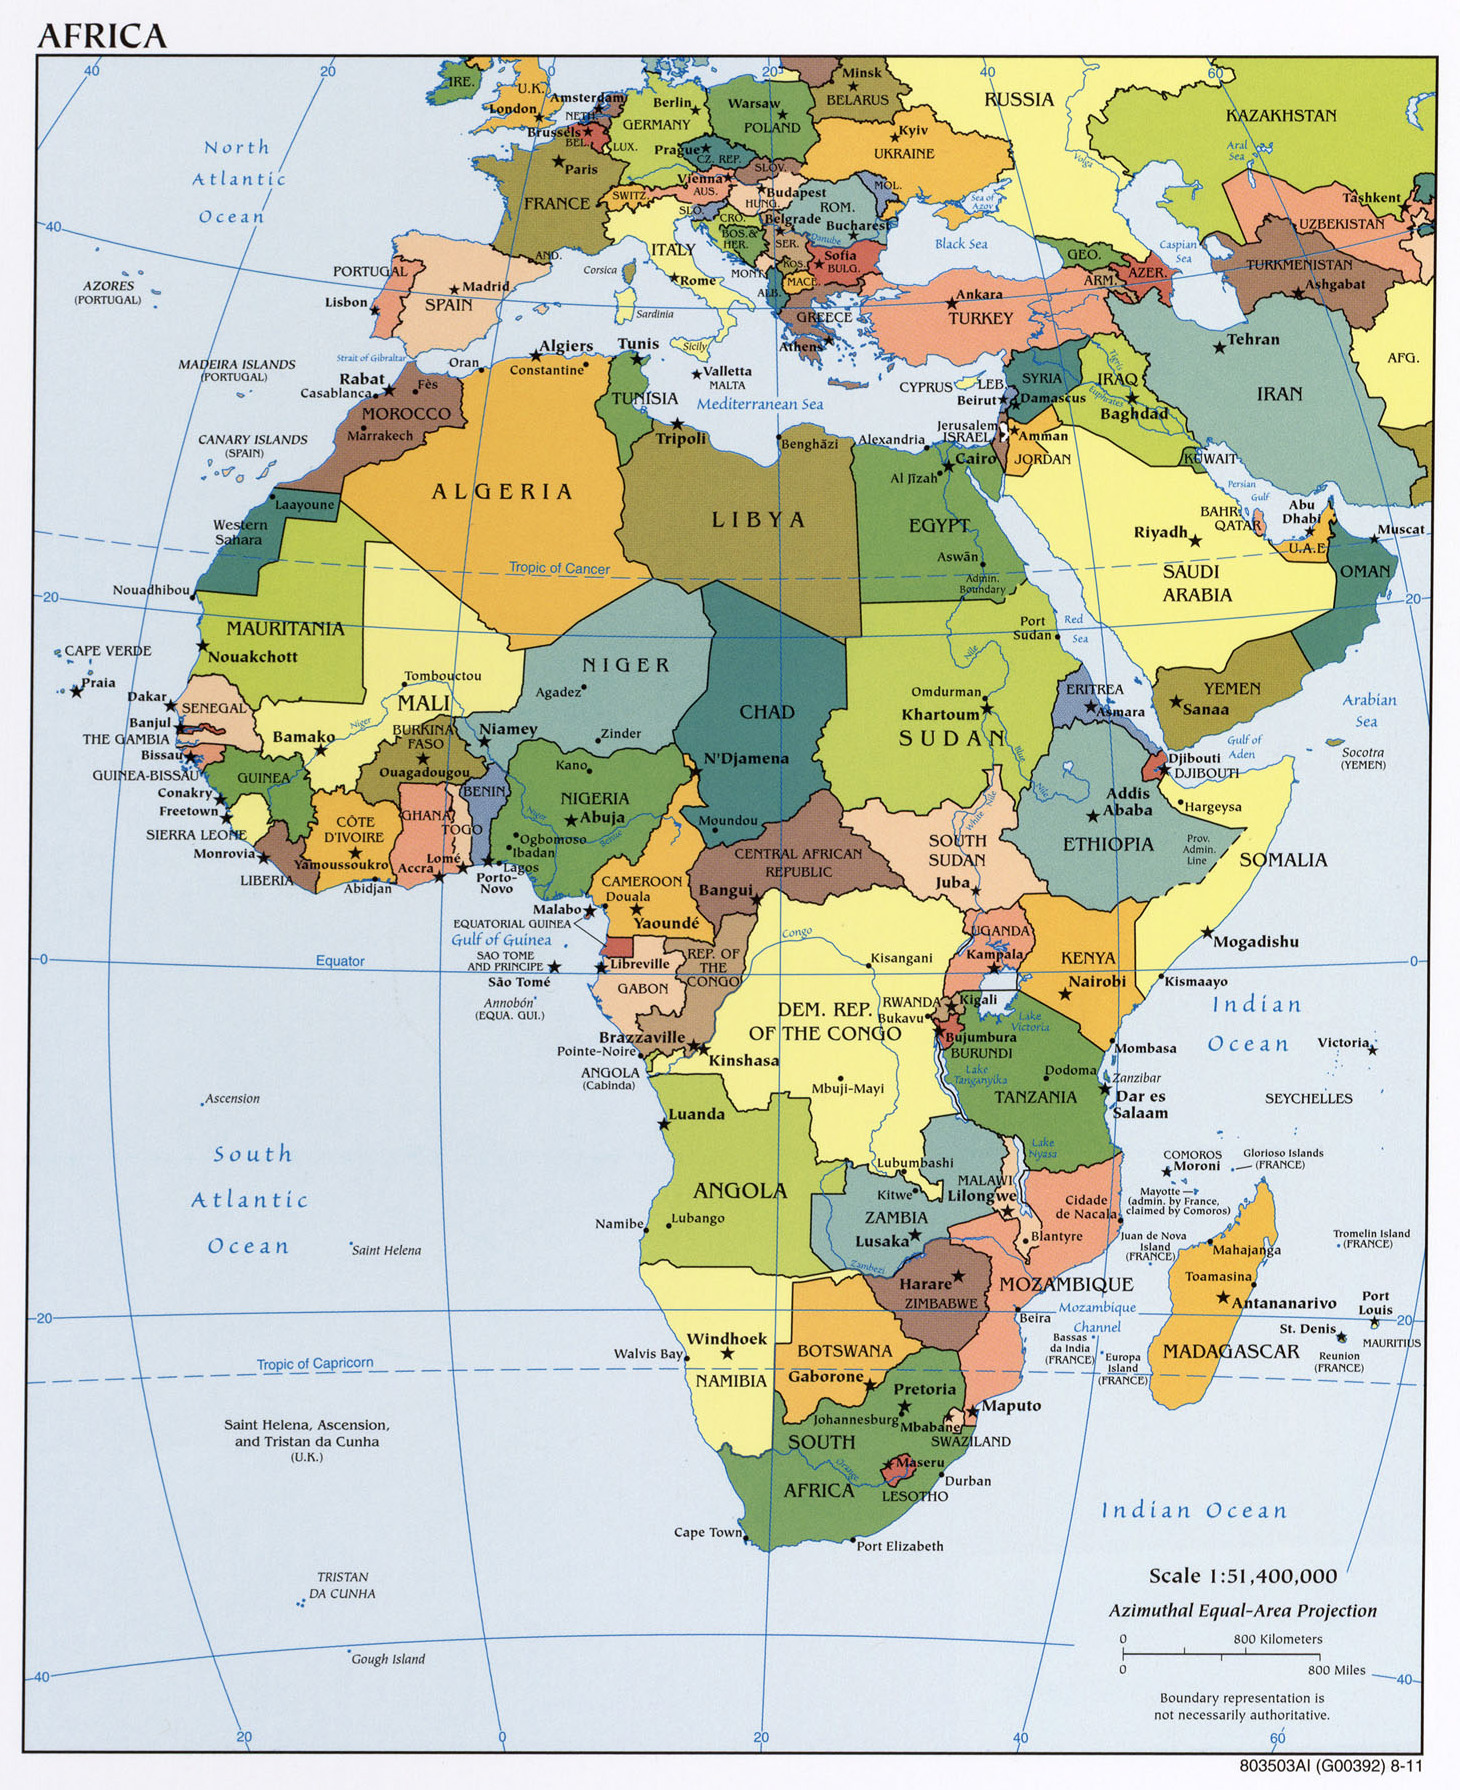 Mapa Politico Grande De Africa Con Las Principales Ciudades Y Capitales 2011 